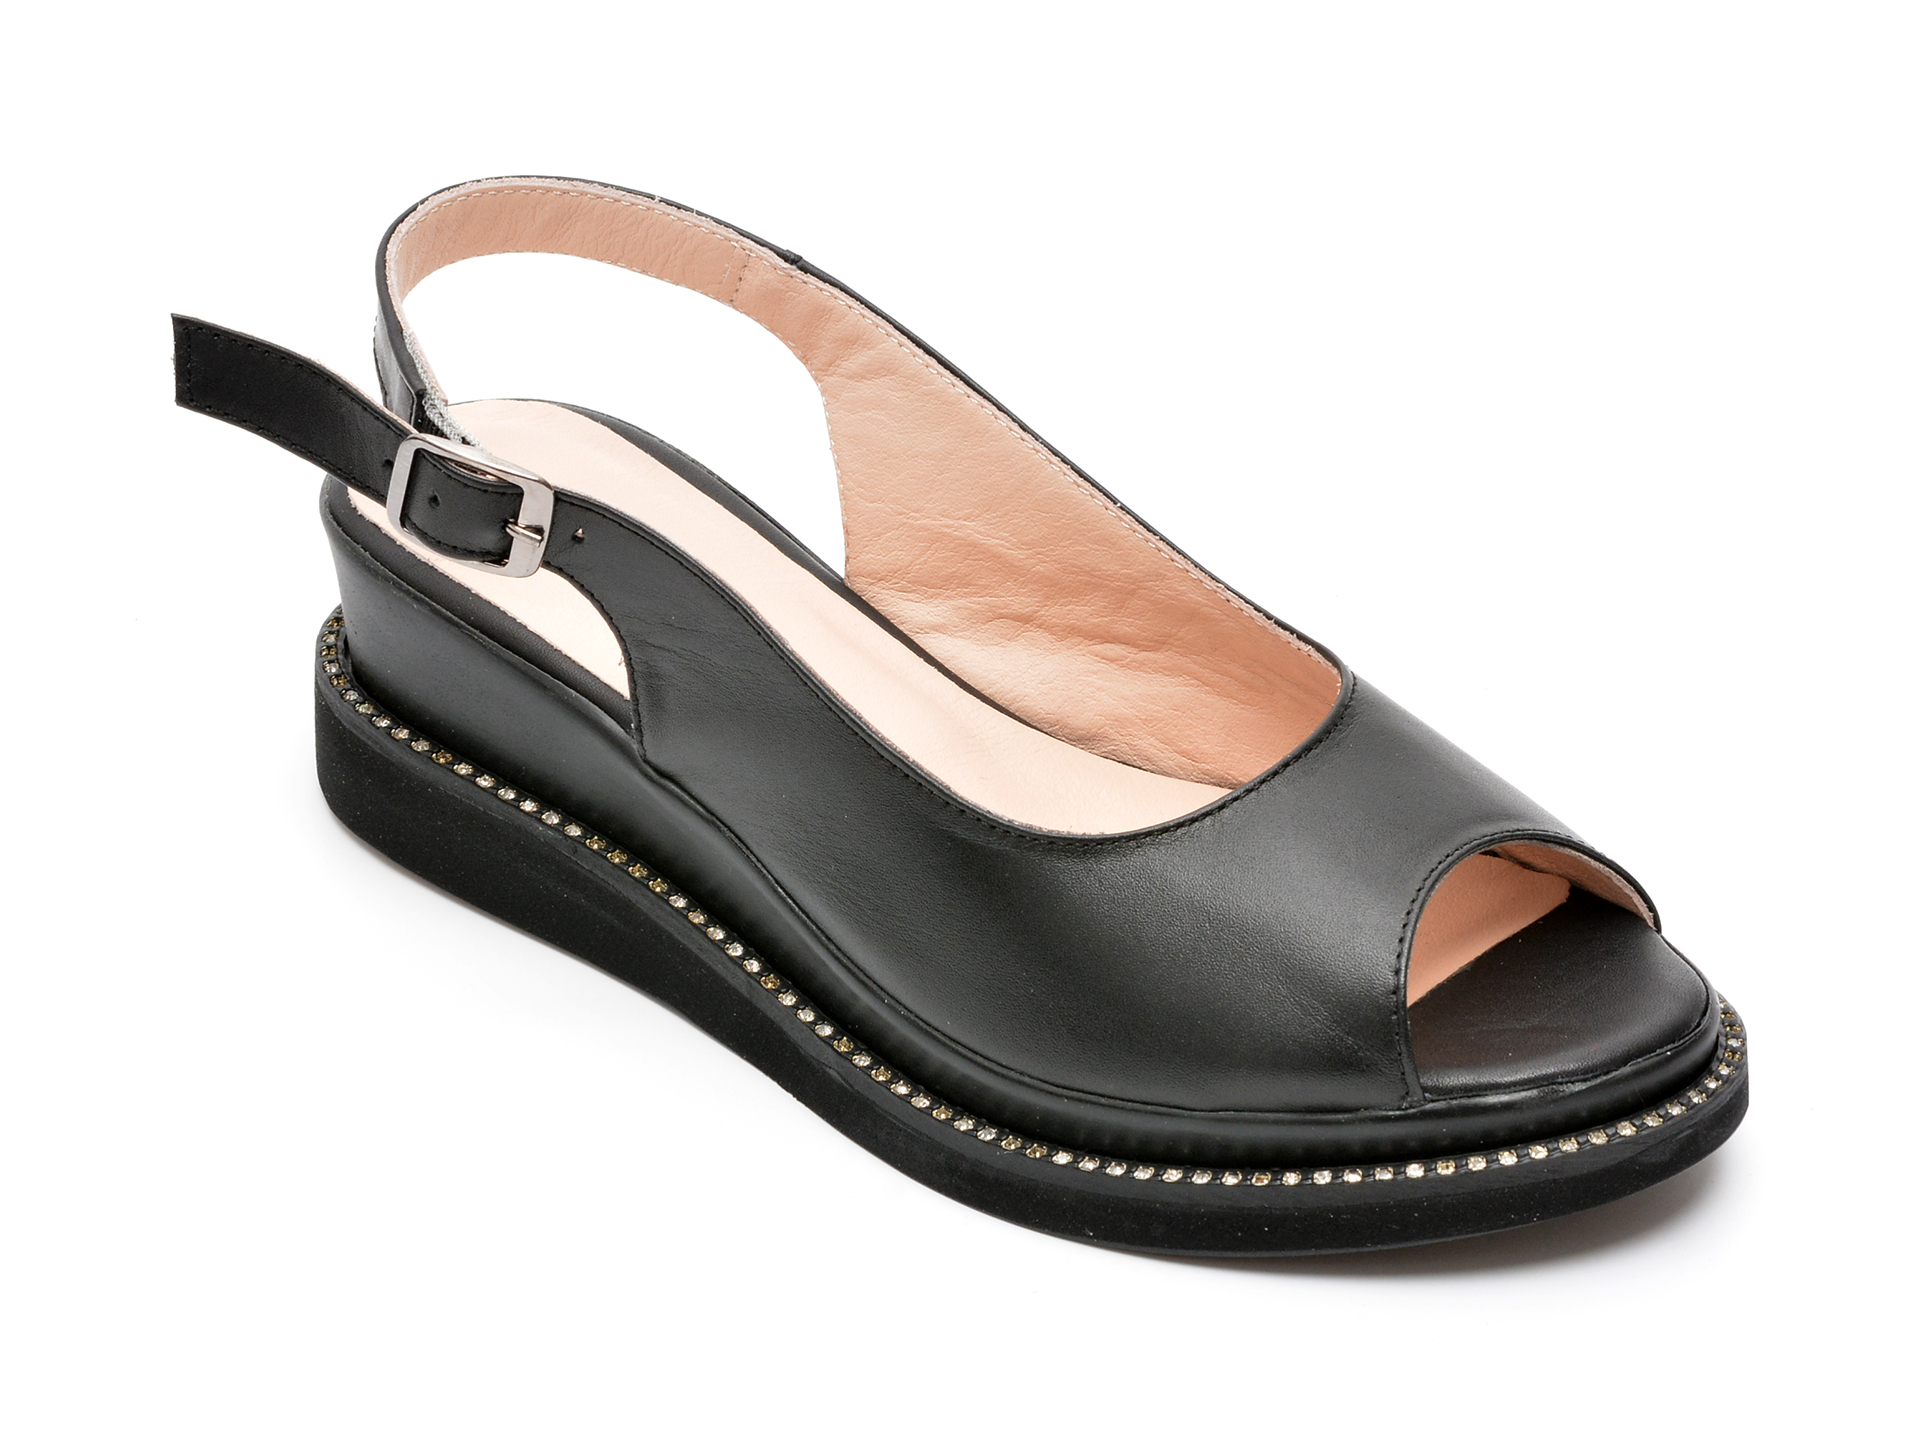 Sandale HK DIVA CLAP negre, 4011, din piele naturala imagine reduceri black friday 2021 /femei/sandale